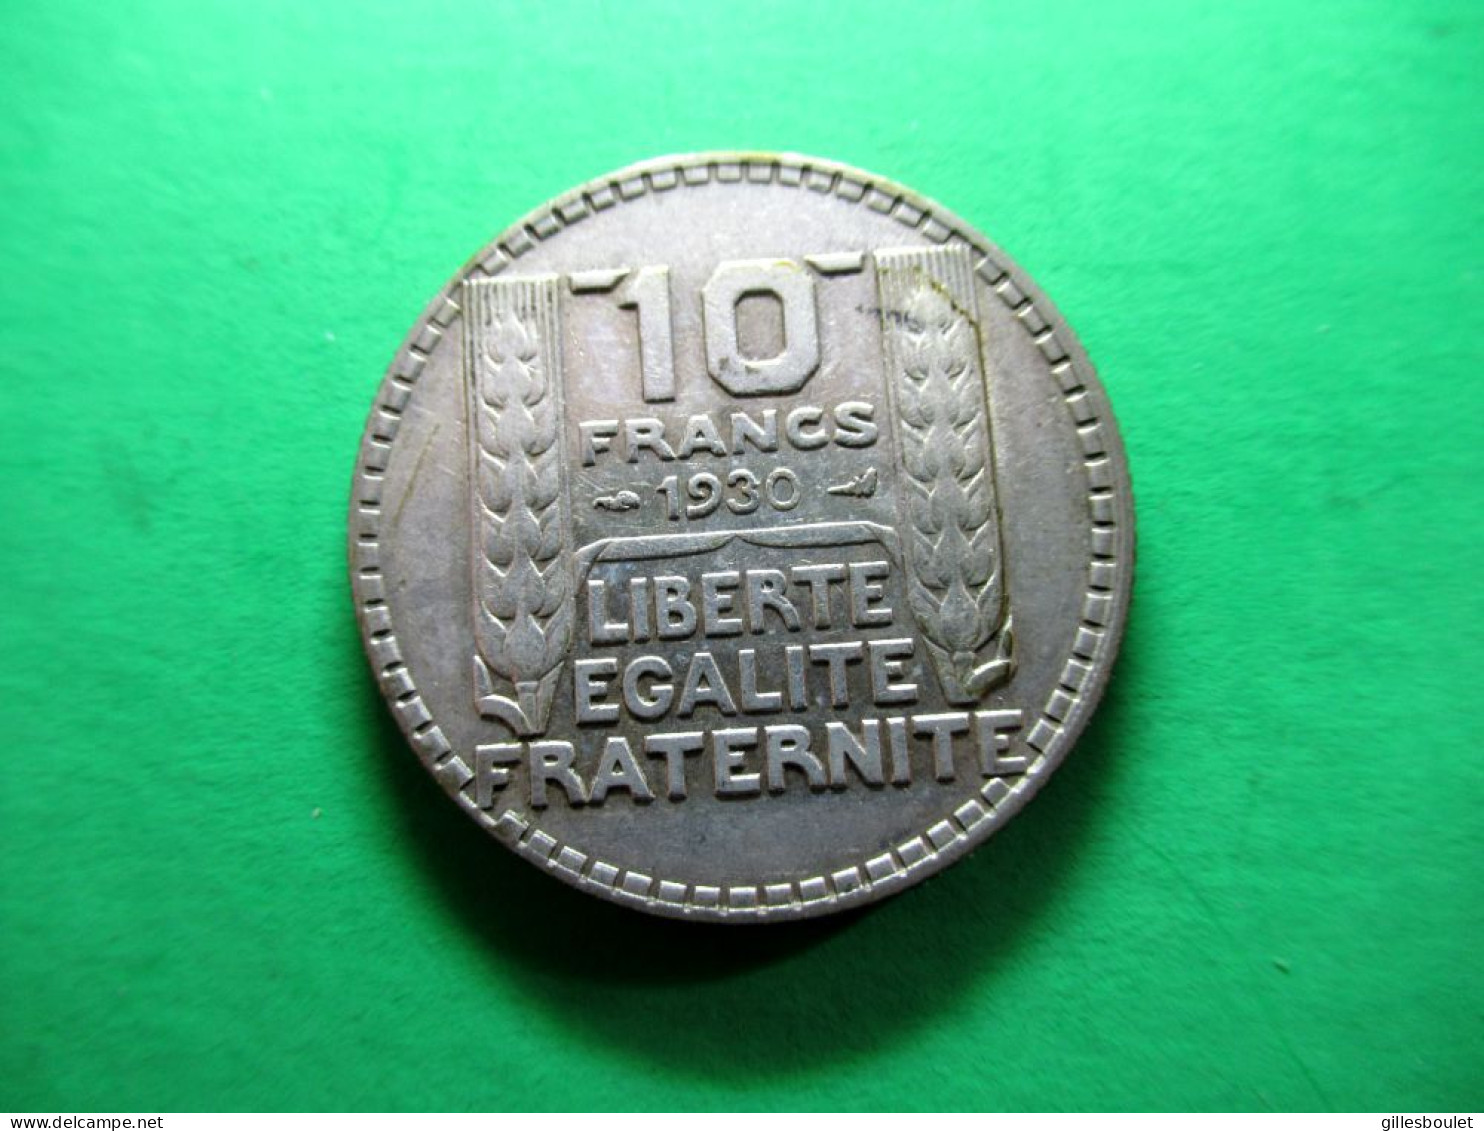 Groupe 4 pièces dont rare 10 francs 1945 (rameaux courts) SUP. 2 en argent: 20fr, 1933, 10fr. 1930 et 10fr.1948.